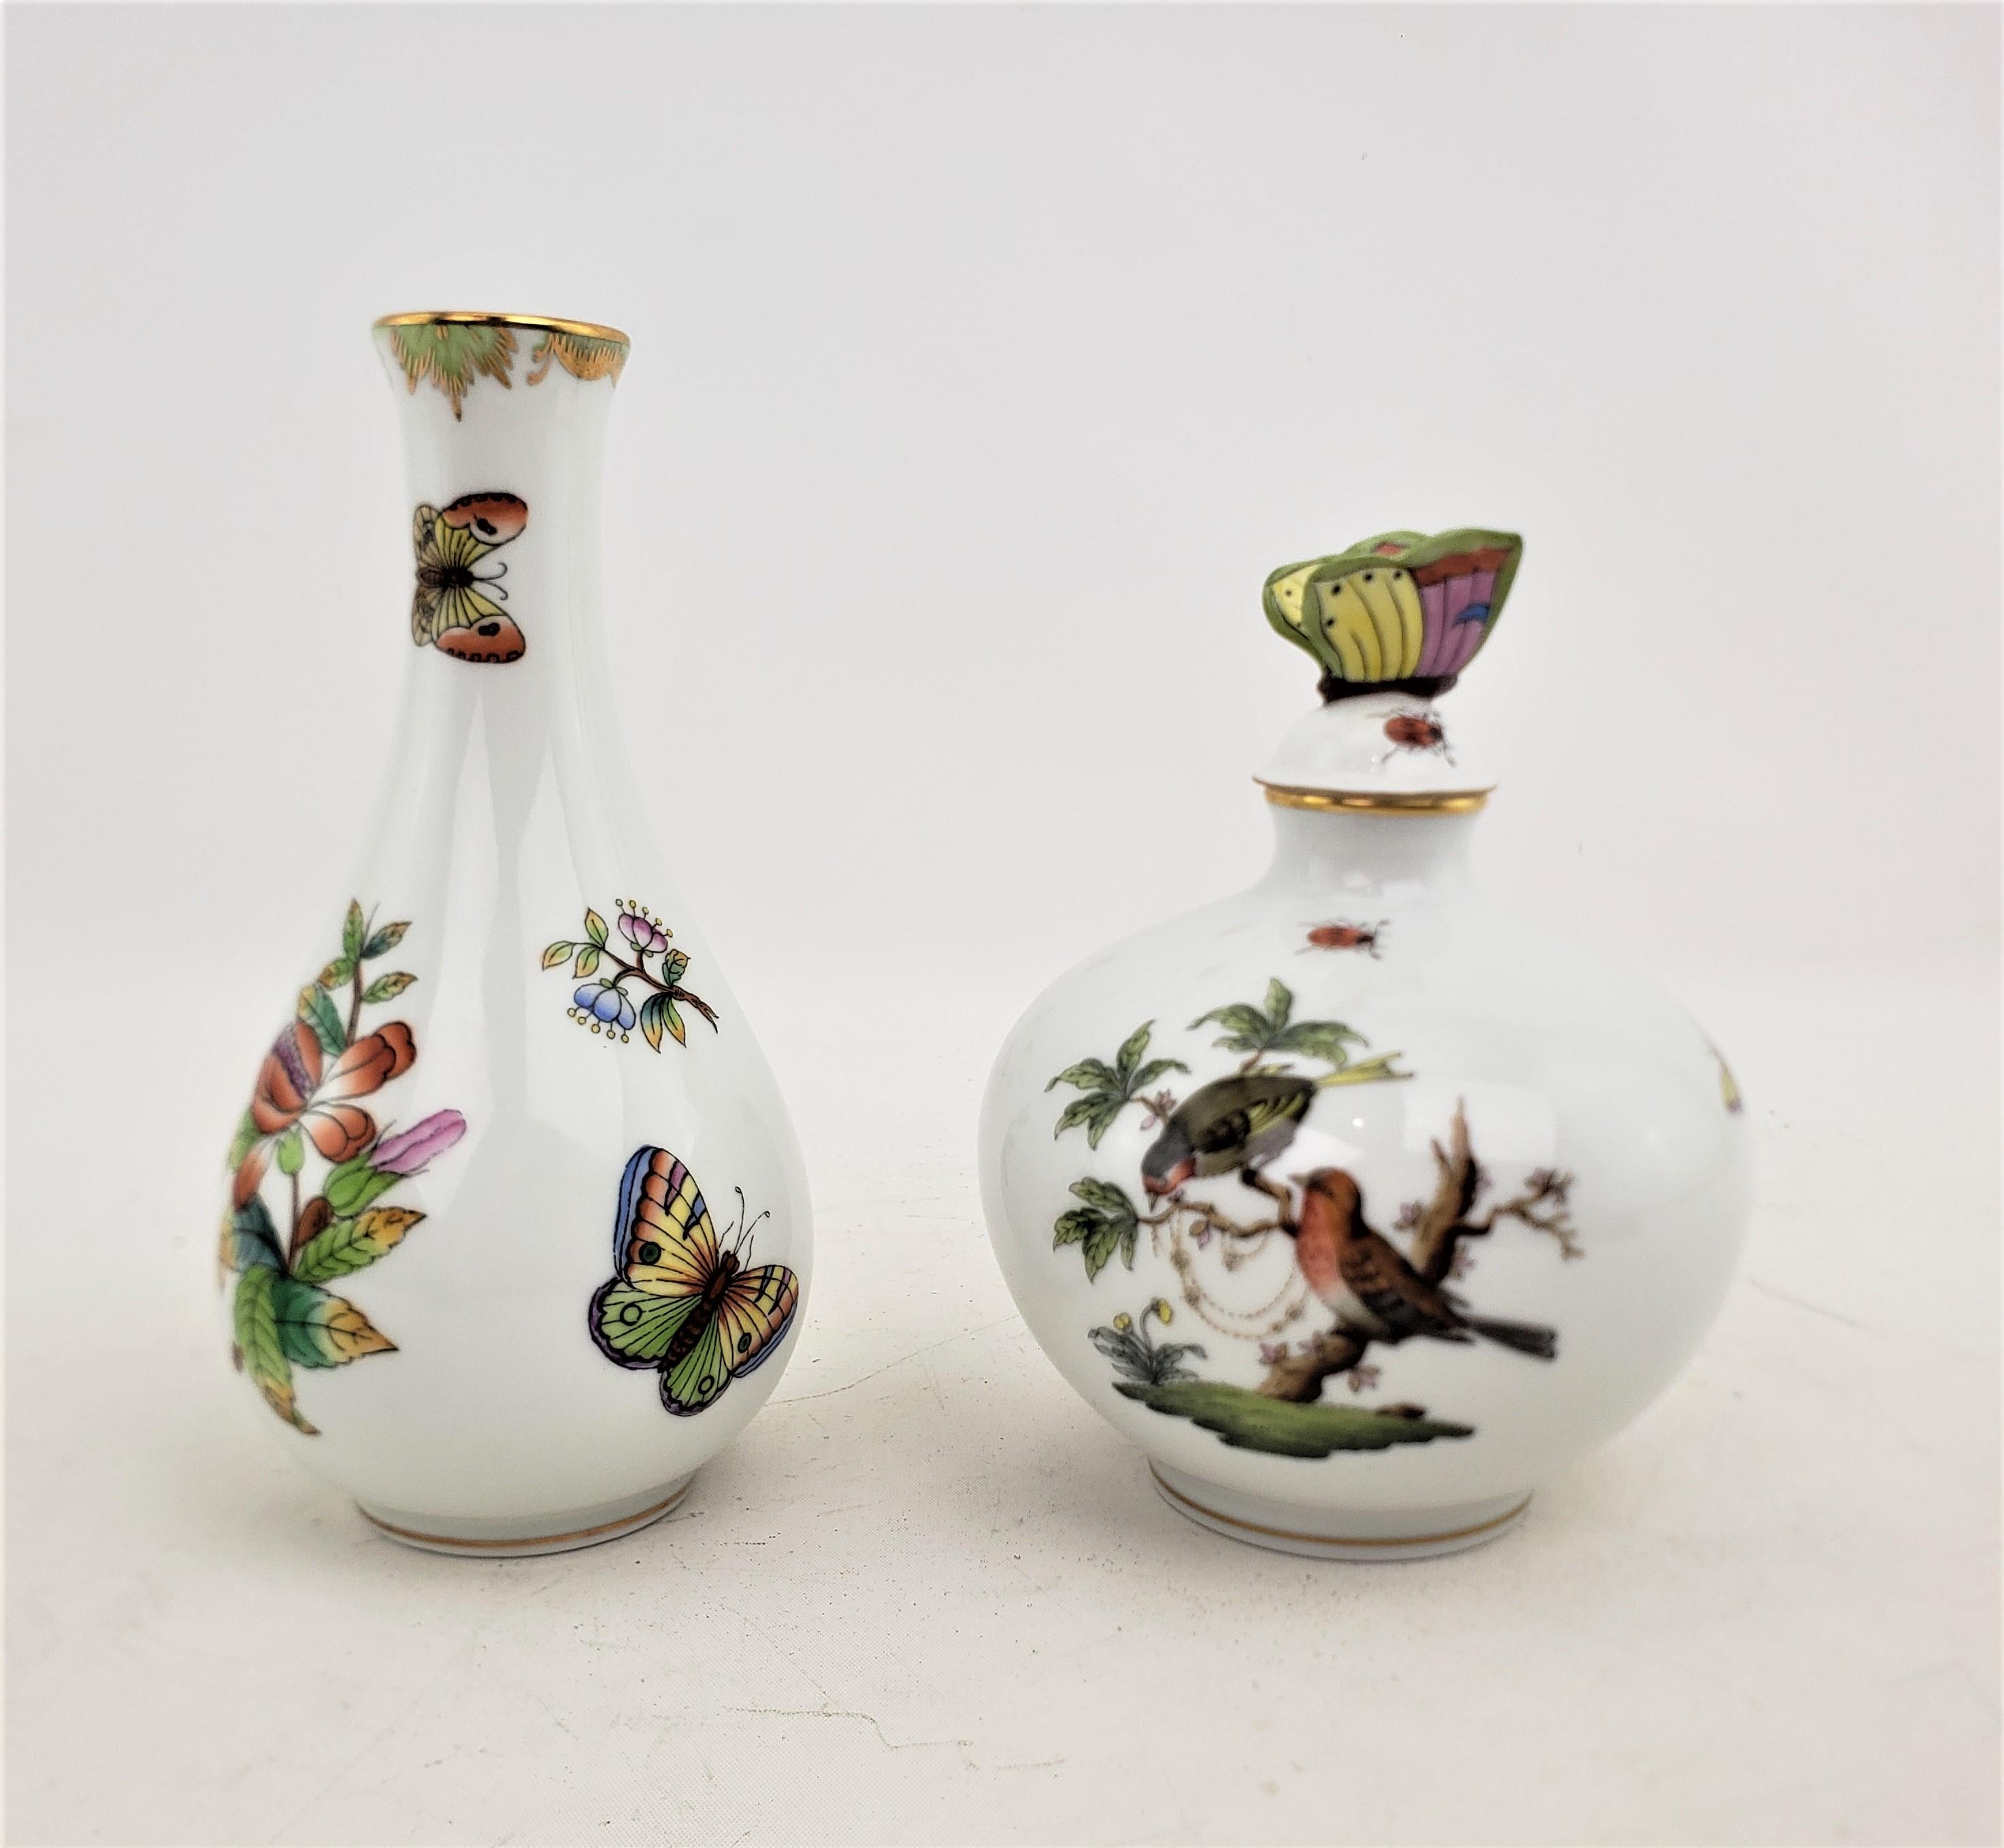 Ce flacon de parfum et ce vase ont tous deux été fabriqués par la célèbre usine Herend de Hongrie vers 1970 dans un style victorien. Les paires sont toutes deux composées de porcelaine qui a été ornementée et peinte à la main. Le flacon de parfum